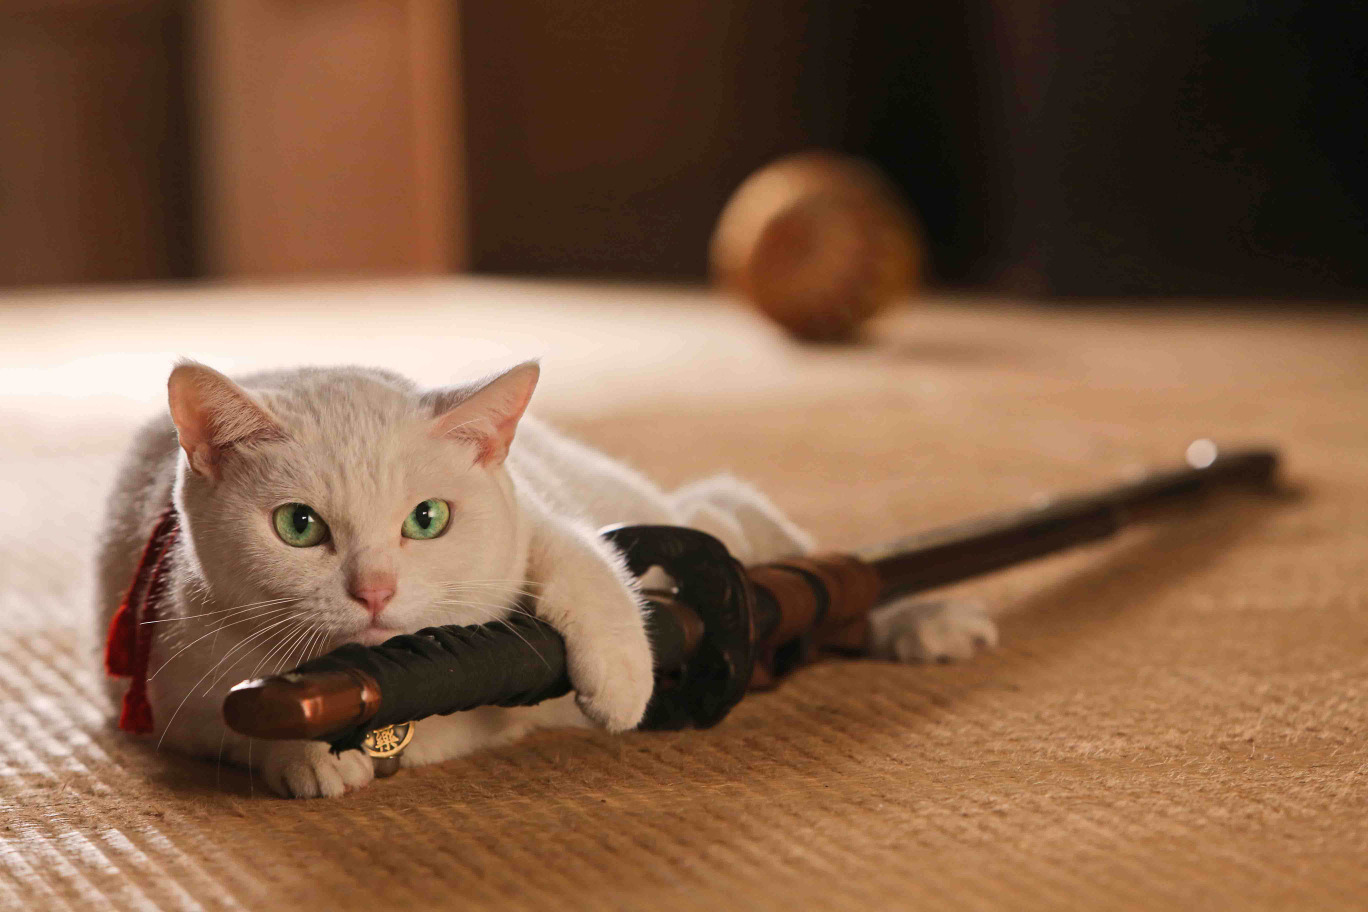 激萌え白猫にメロメロ 映画版 猫侍 が来年3月公開 Rbb Today